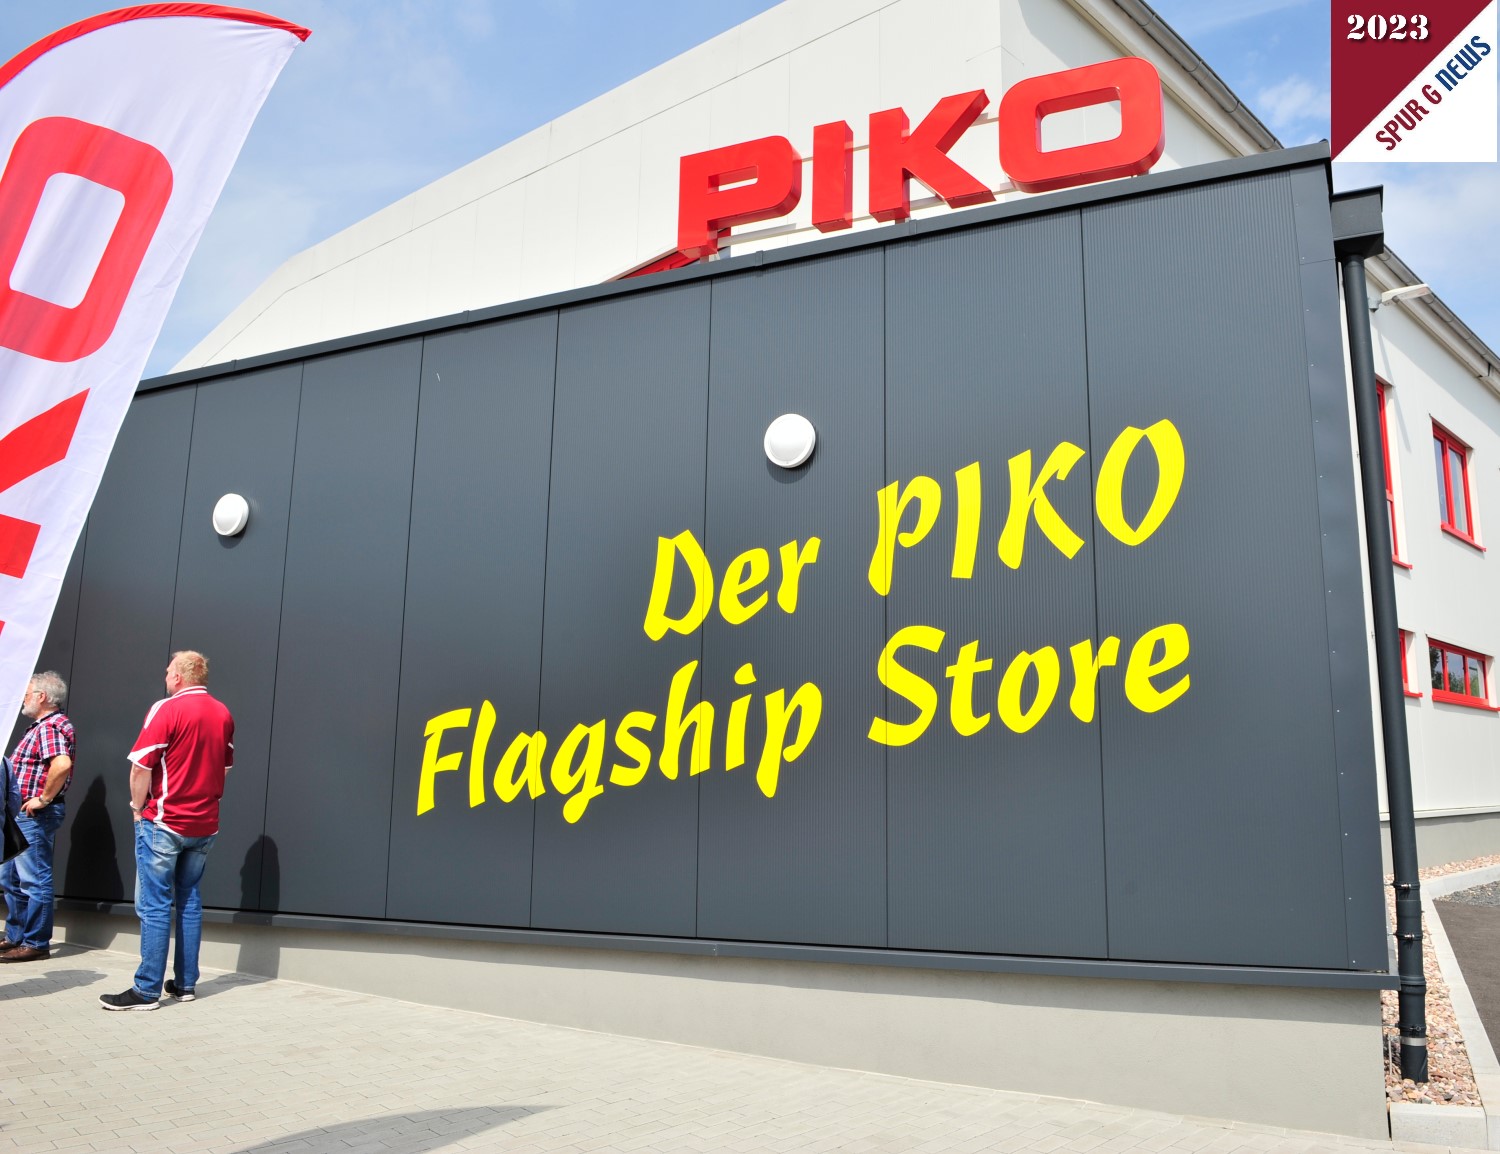 Der neue Flagship Store von PIKO.  Flagship Store ist eine exklusive und besondere Filiale einer Marke die meist in Grostdten betrieben wird und sich durch ein reichhaltiges und besonderes Angebot der Marke auszeichnet. Sonneberg ist somit auch eine "Grostadt" geworden, wenn es um die "PIKO" geht. 